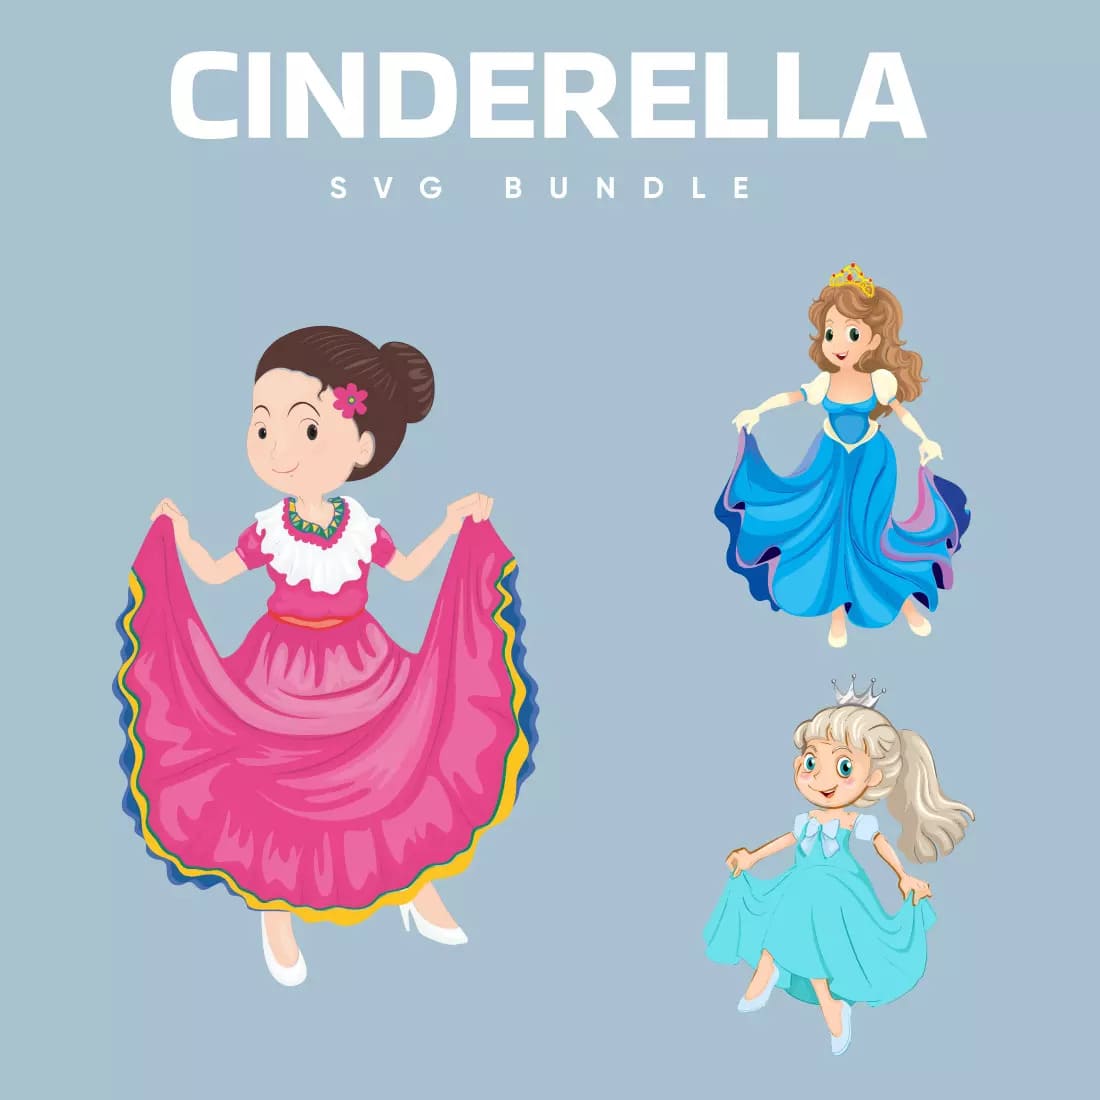 Cinderella SVG Bundle Preview 1.